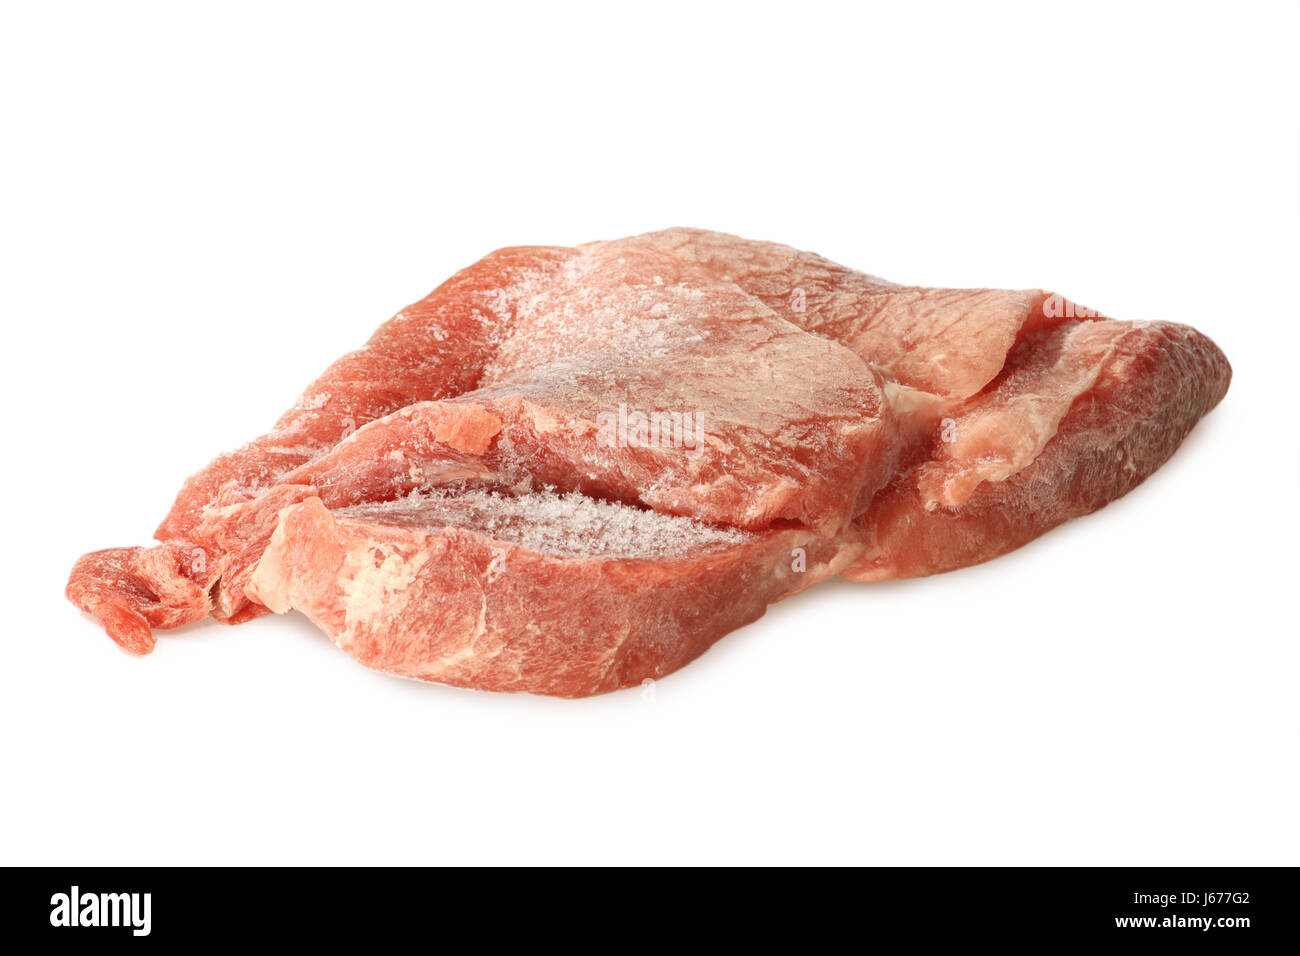 gefrorene Schnitzel Schwein Fleisch essen Nahrungsmittel gefroren rohe  Schnitzel Tiefkühlkost Schweinefleisch Stockfotografie - Alamy